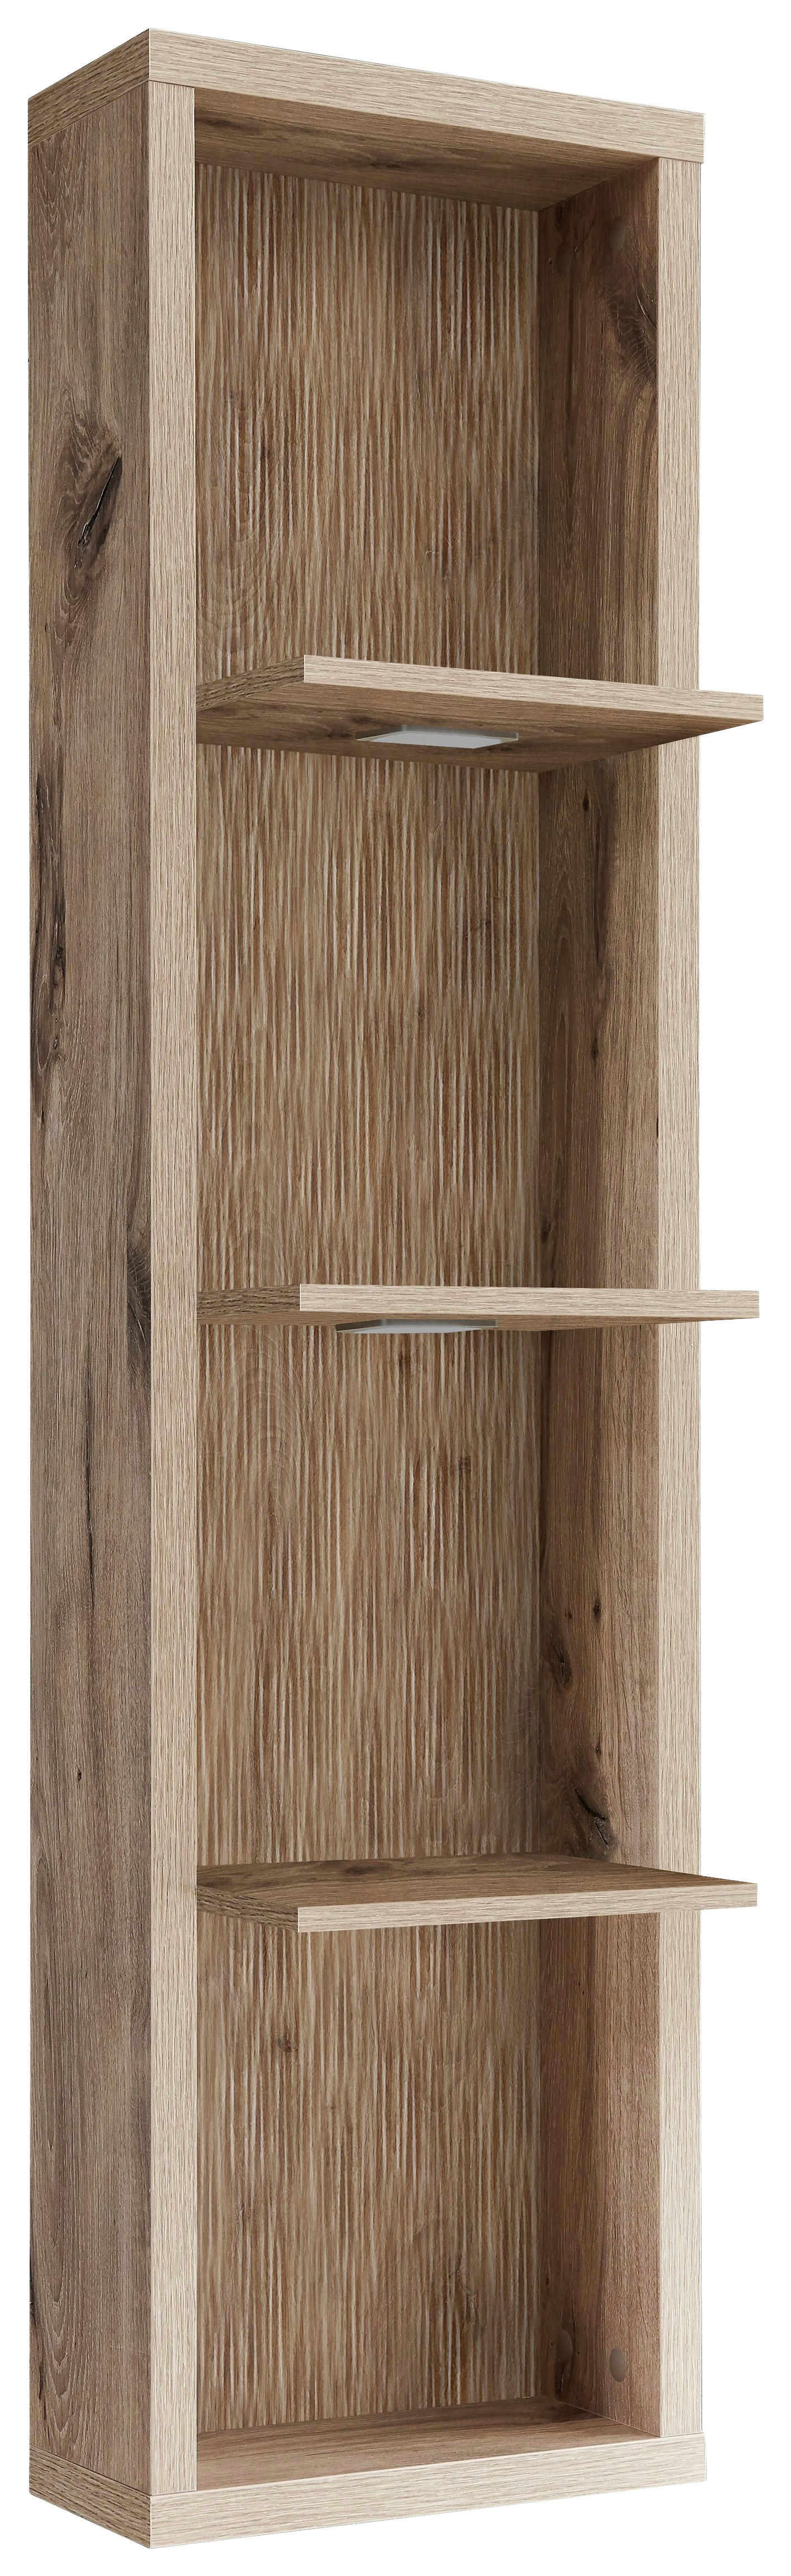 WANDREGAL Eichefarben  - Eichefarben, Design, Holzwerkstoff (36/138/28cm) - Stylife